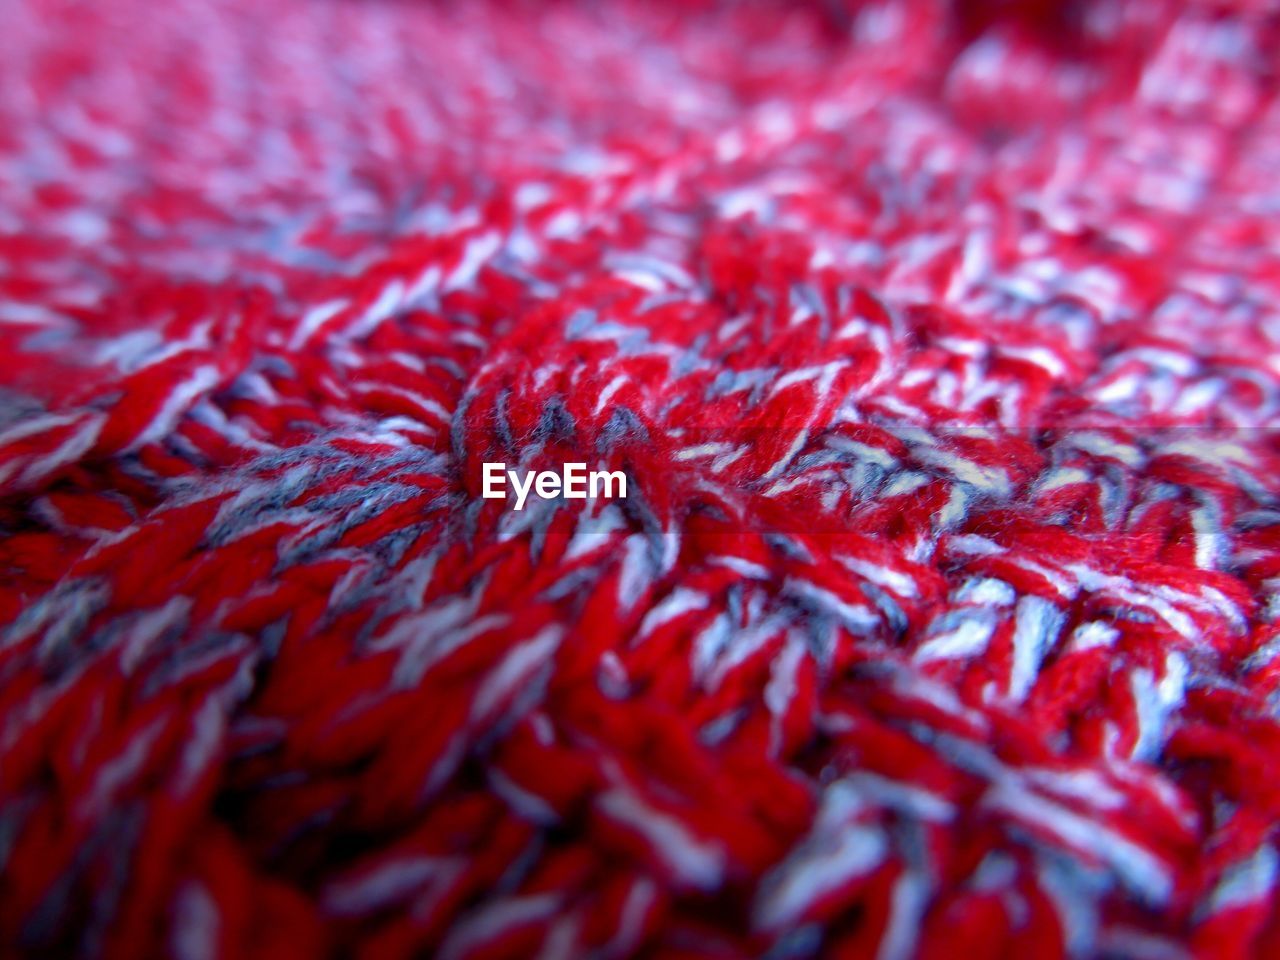 Full frame shot of red wool